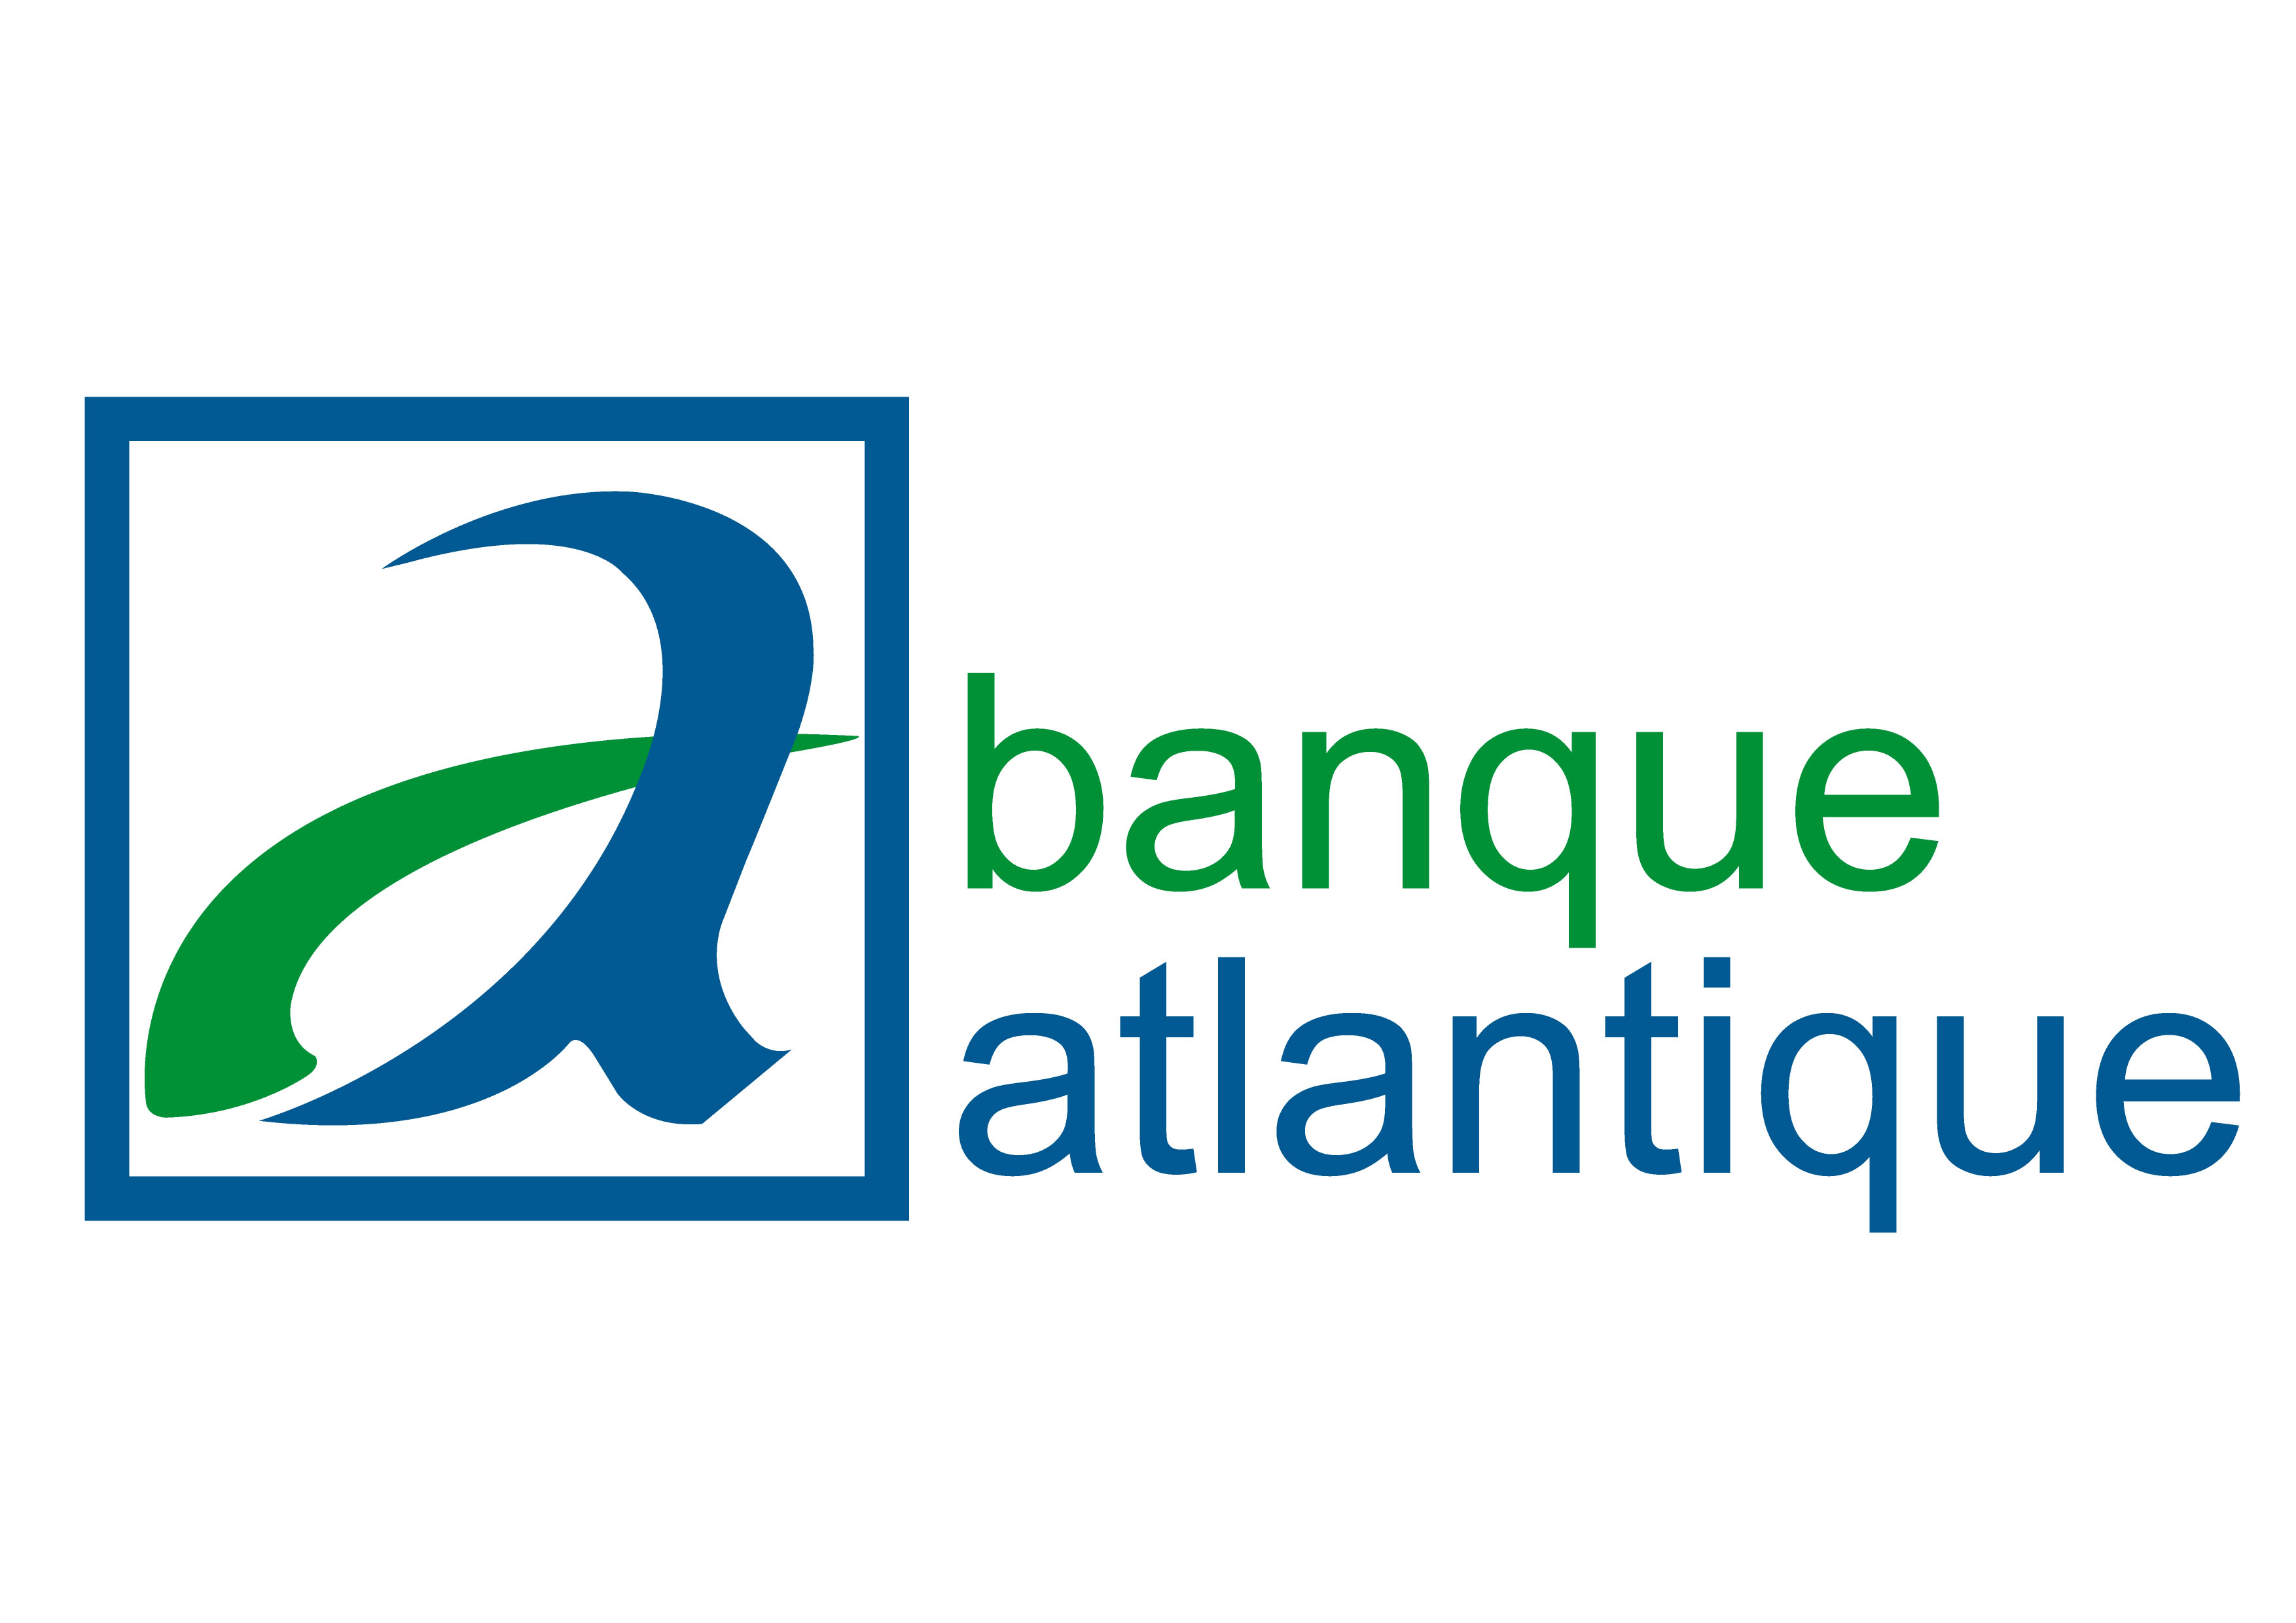 Banque Atlantique décroche un financement de 15 millions de dollars auprès d’AGF